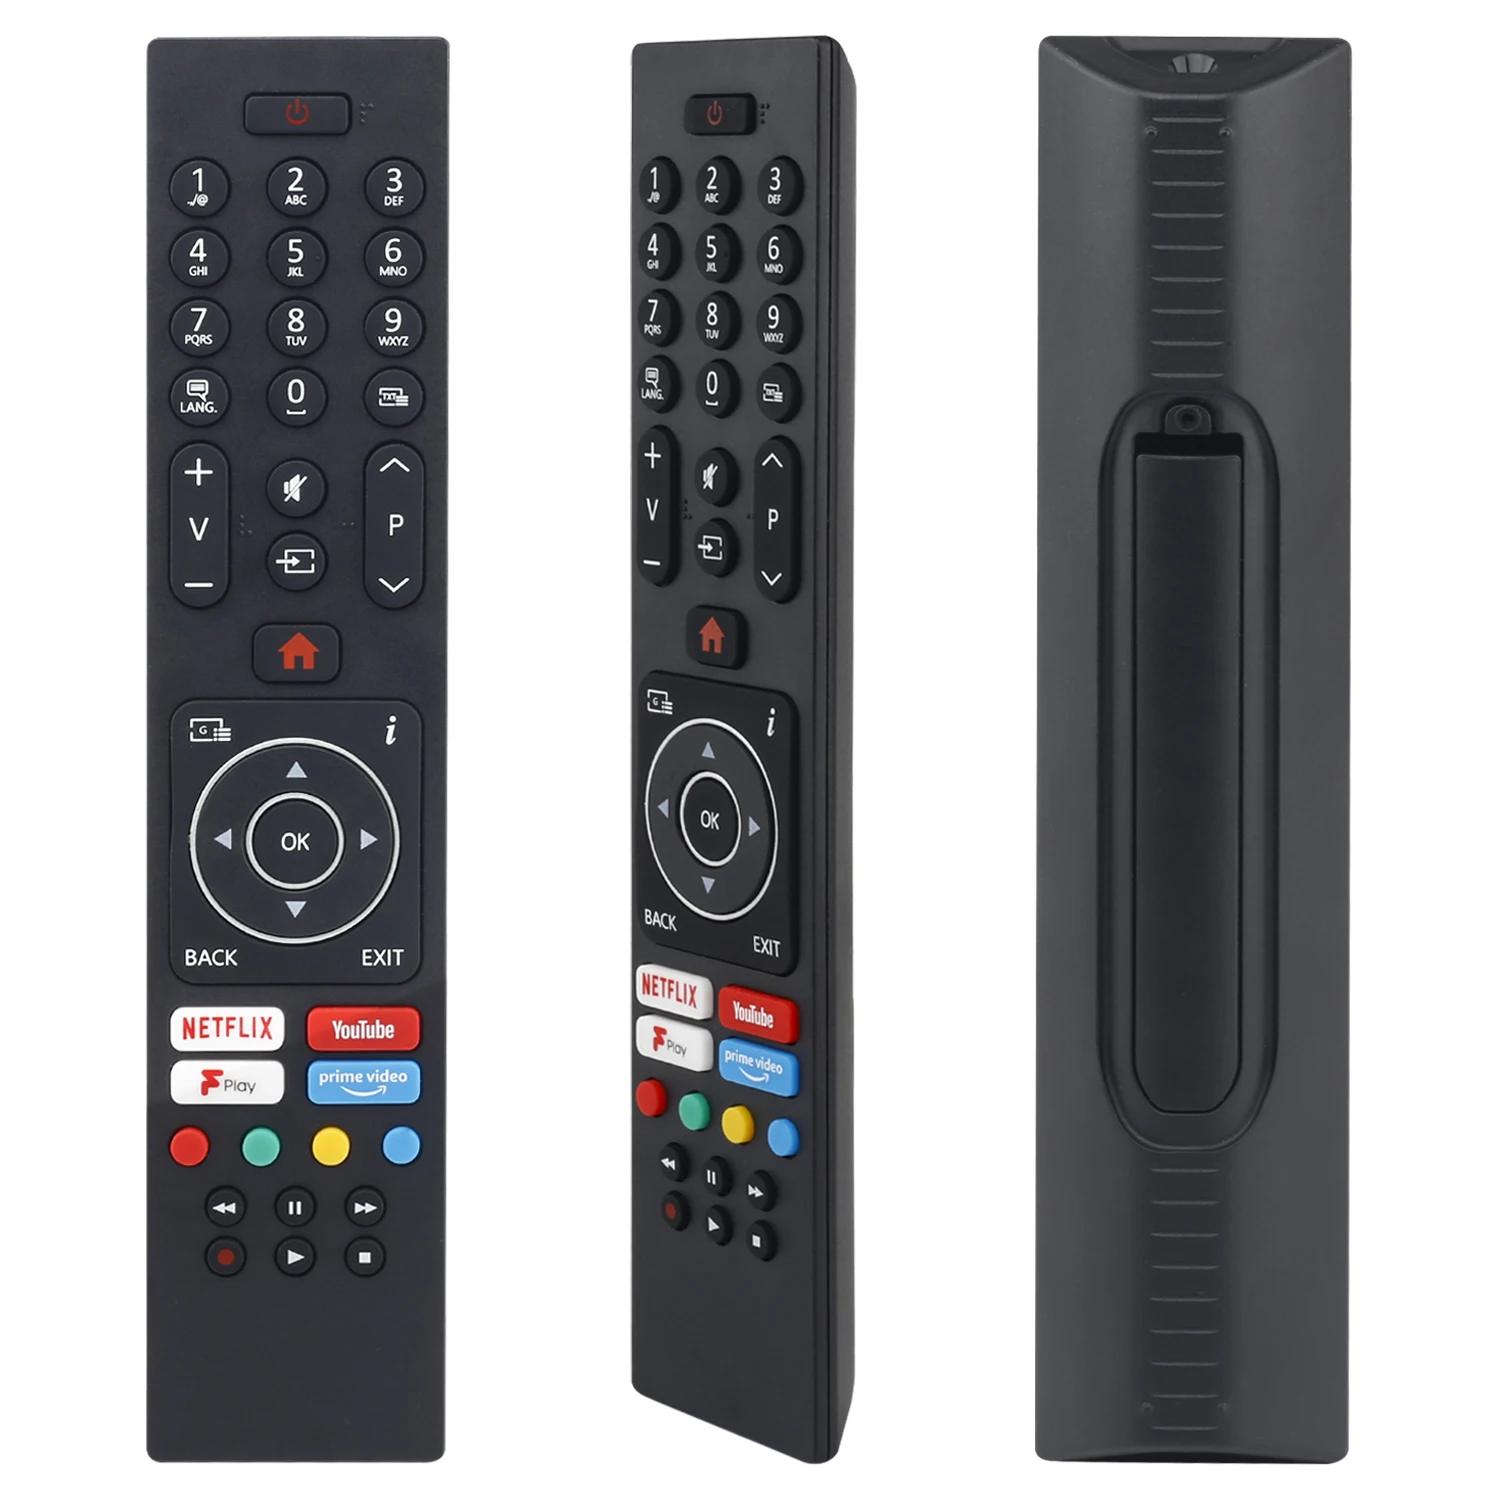 *NEW* Genuine TV Recorder Remote Control for Finlux TS7100 